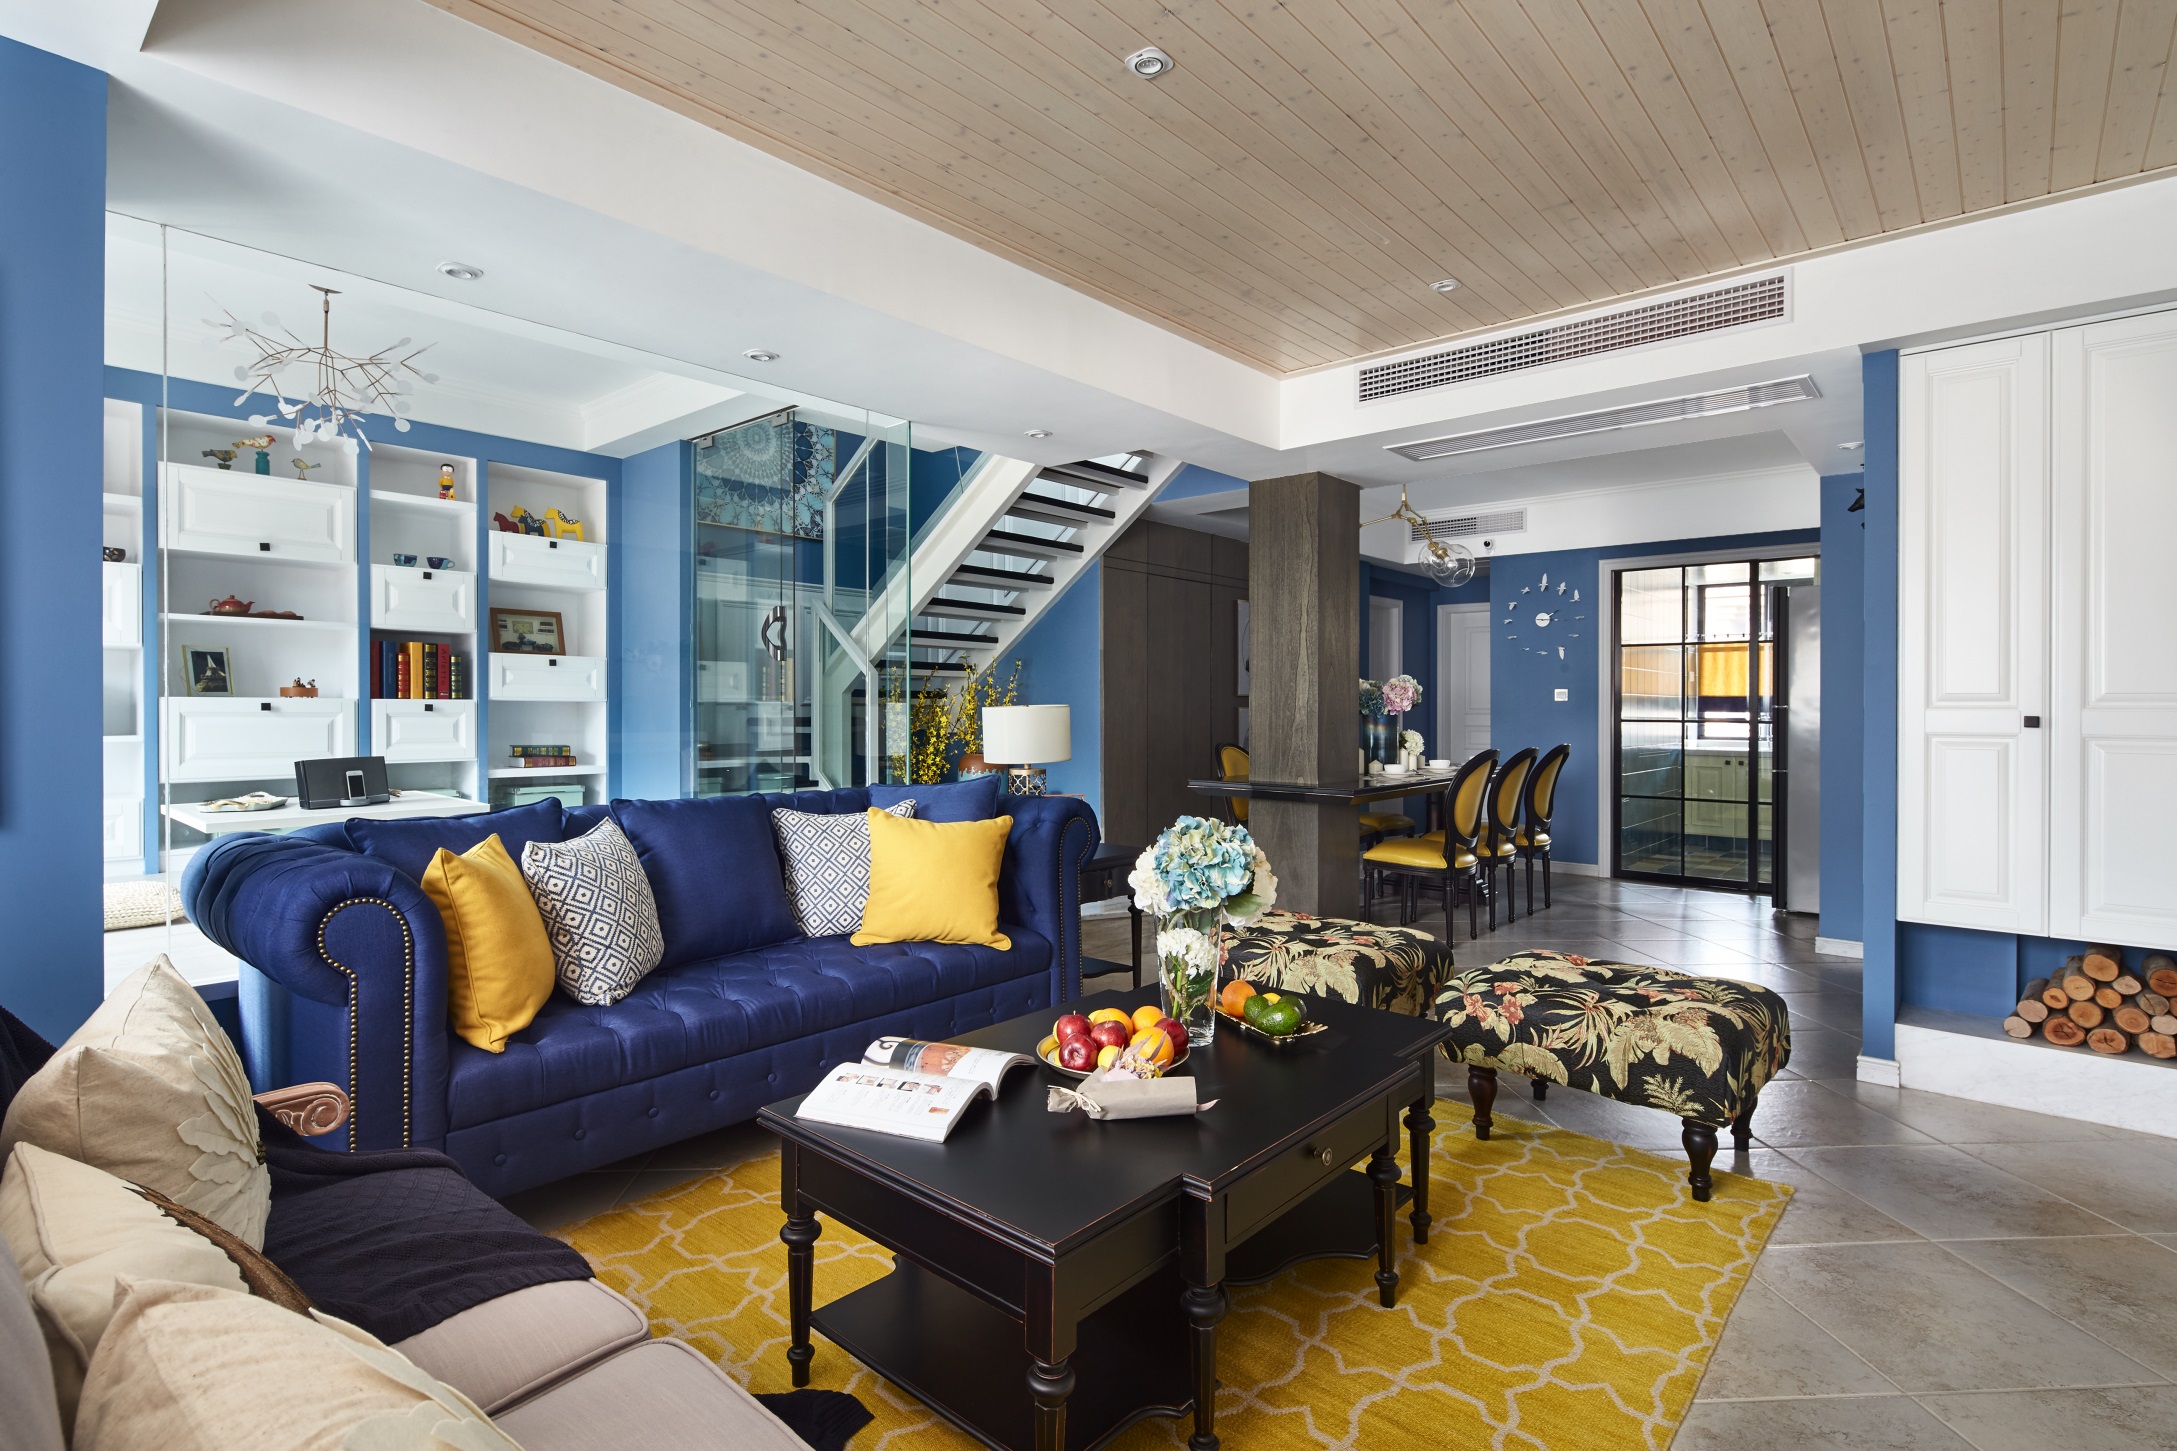 蓝色与白色作为客厅主题色， 给人简洁大气的感觉，客厅、餐厅、书房三位一体，气派华丽。